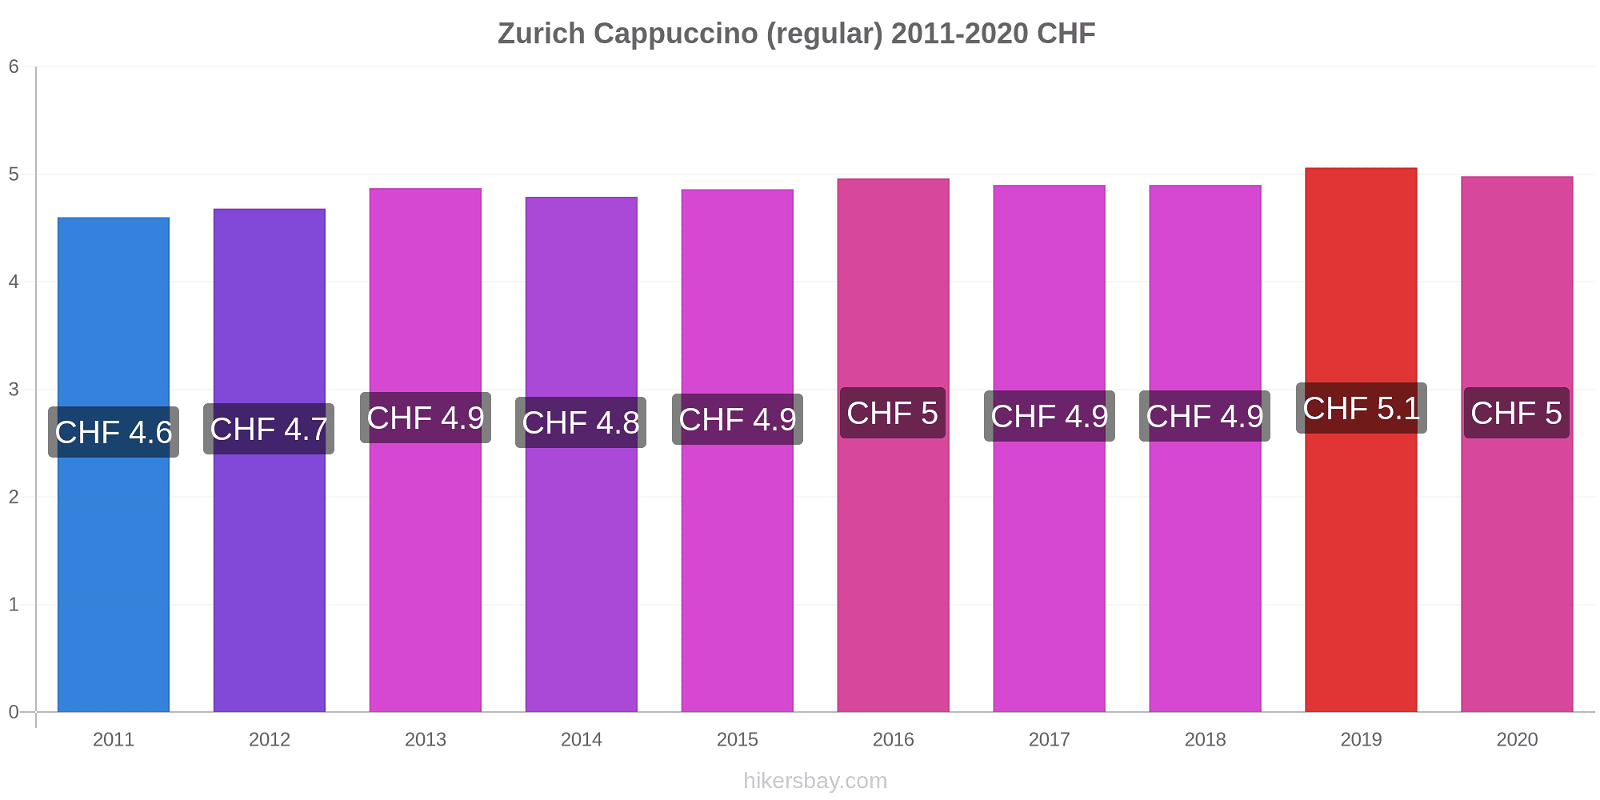 Zurich price changes Cappuccino (regular) hikersbay.com